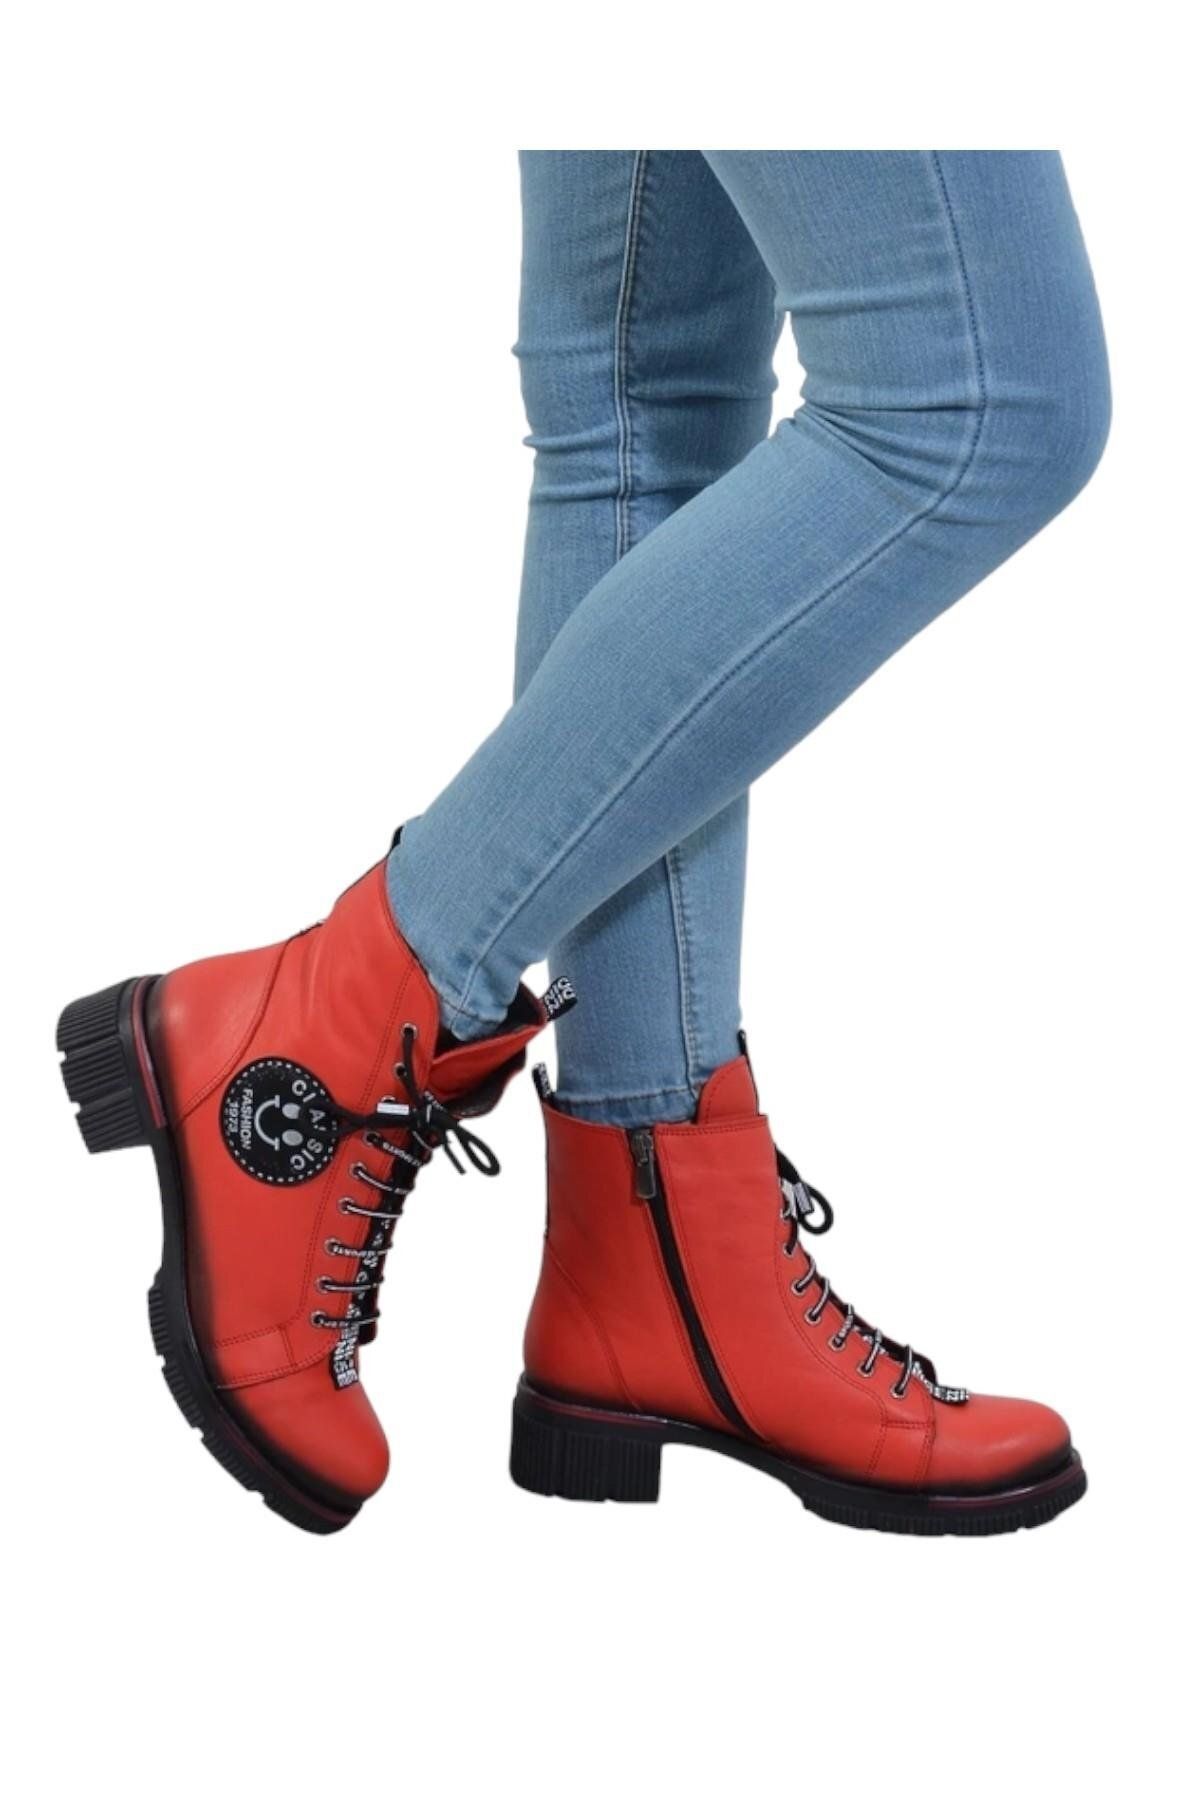 CassidoShoes Hakiki Deri Özel Tasarım Smile Logolu Kırmızı Kadın Bot 002-968